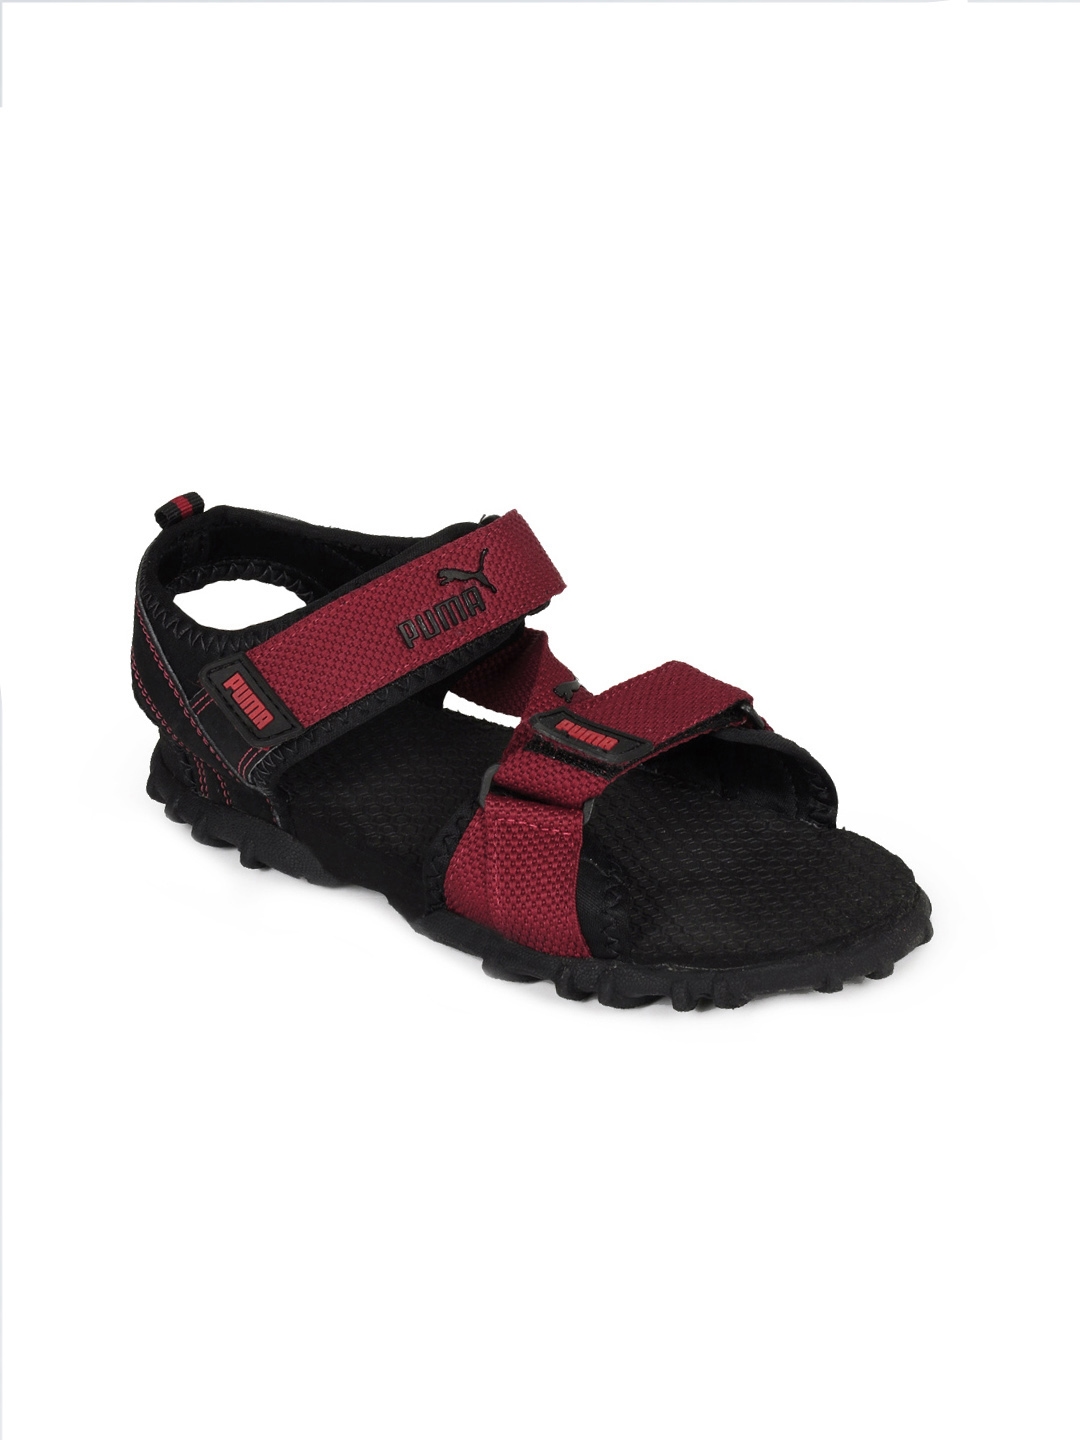 Sparx Sparx Men SS-502 Black Red Floater Sandals Men Black, Red Sports  Sandals - Buy Sparx Sparx Men SS-502 Black Red Floater Sandals Men Black, Red  Sports Sandals Online at Best Price -